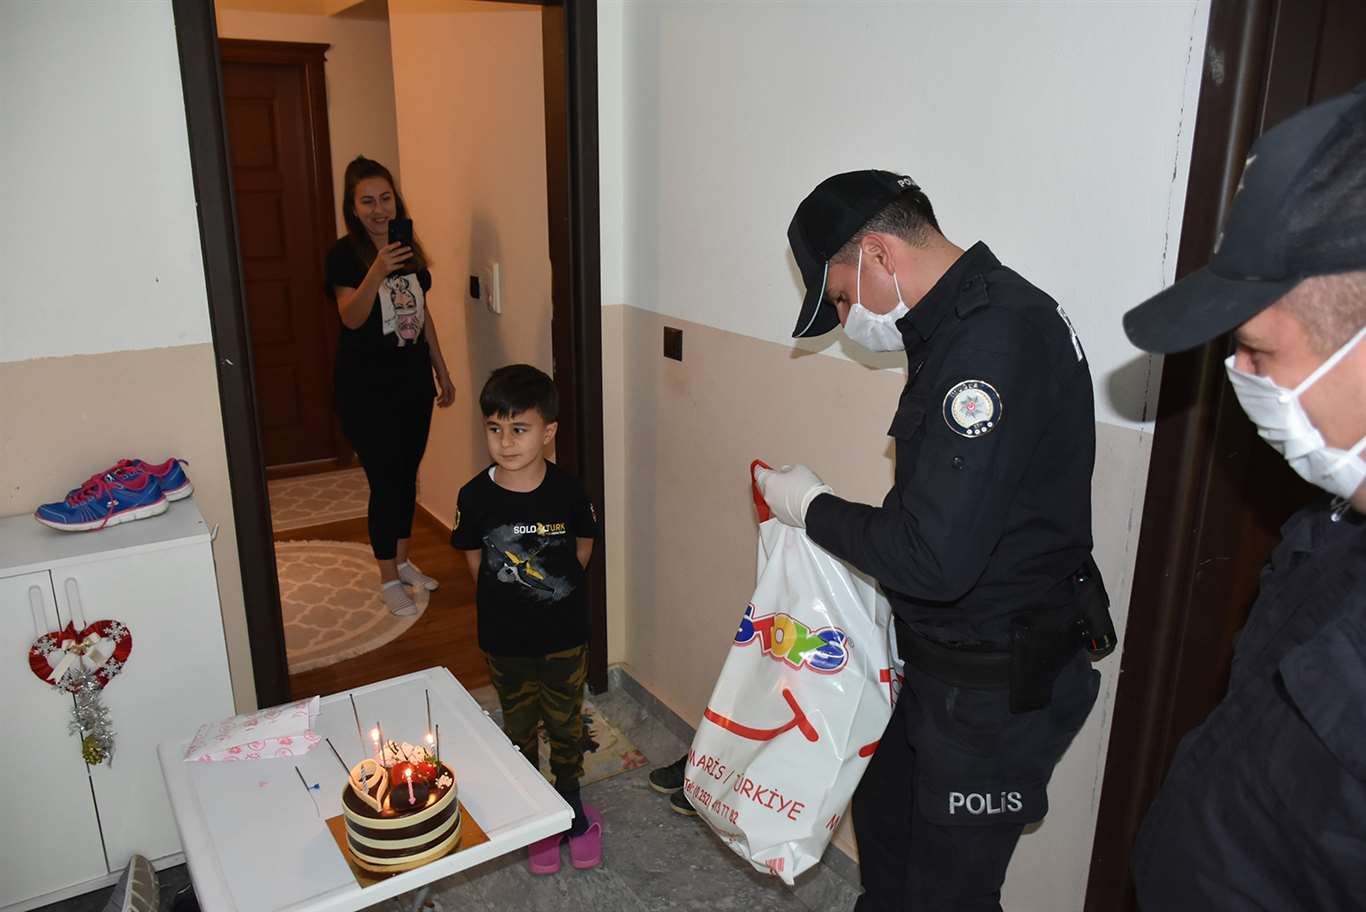          Polis olmak isteyen çocuğa doğum günü sürprizi haberi